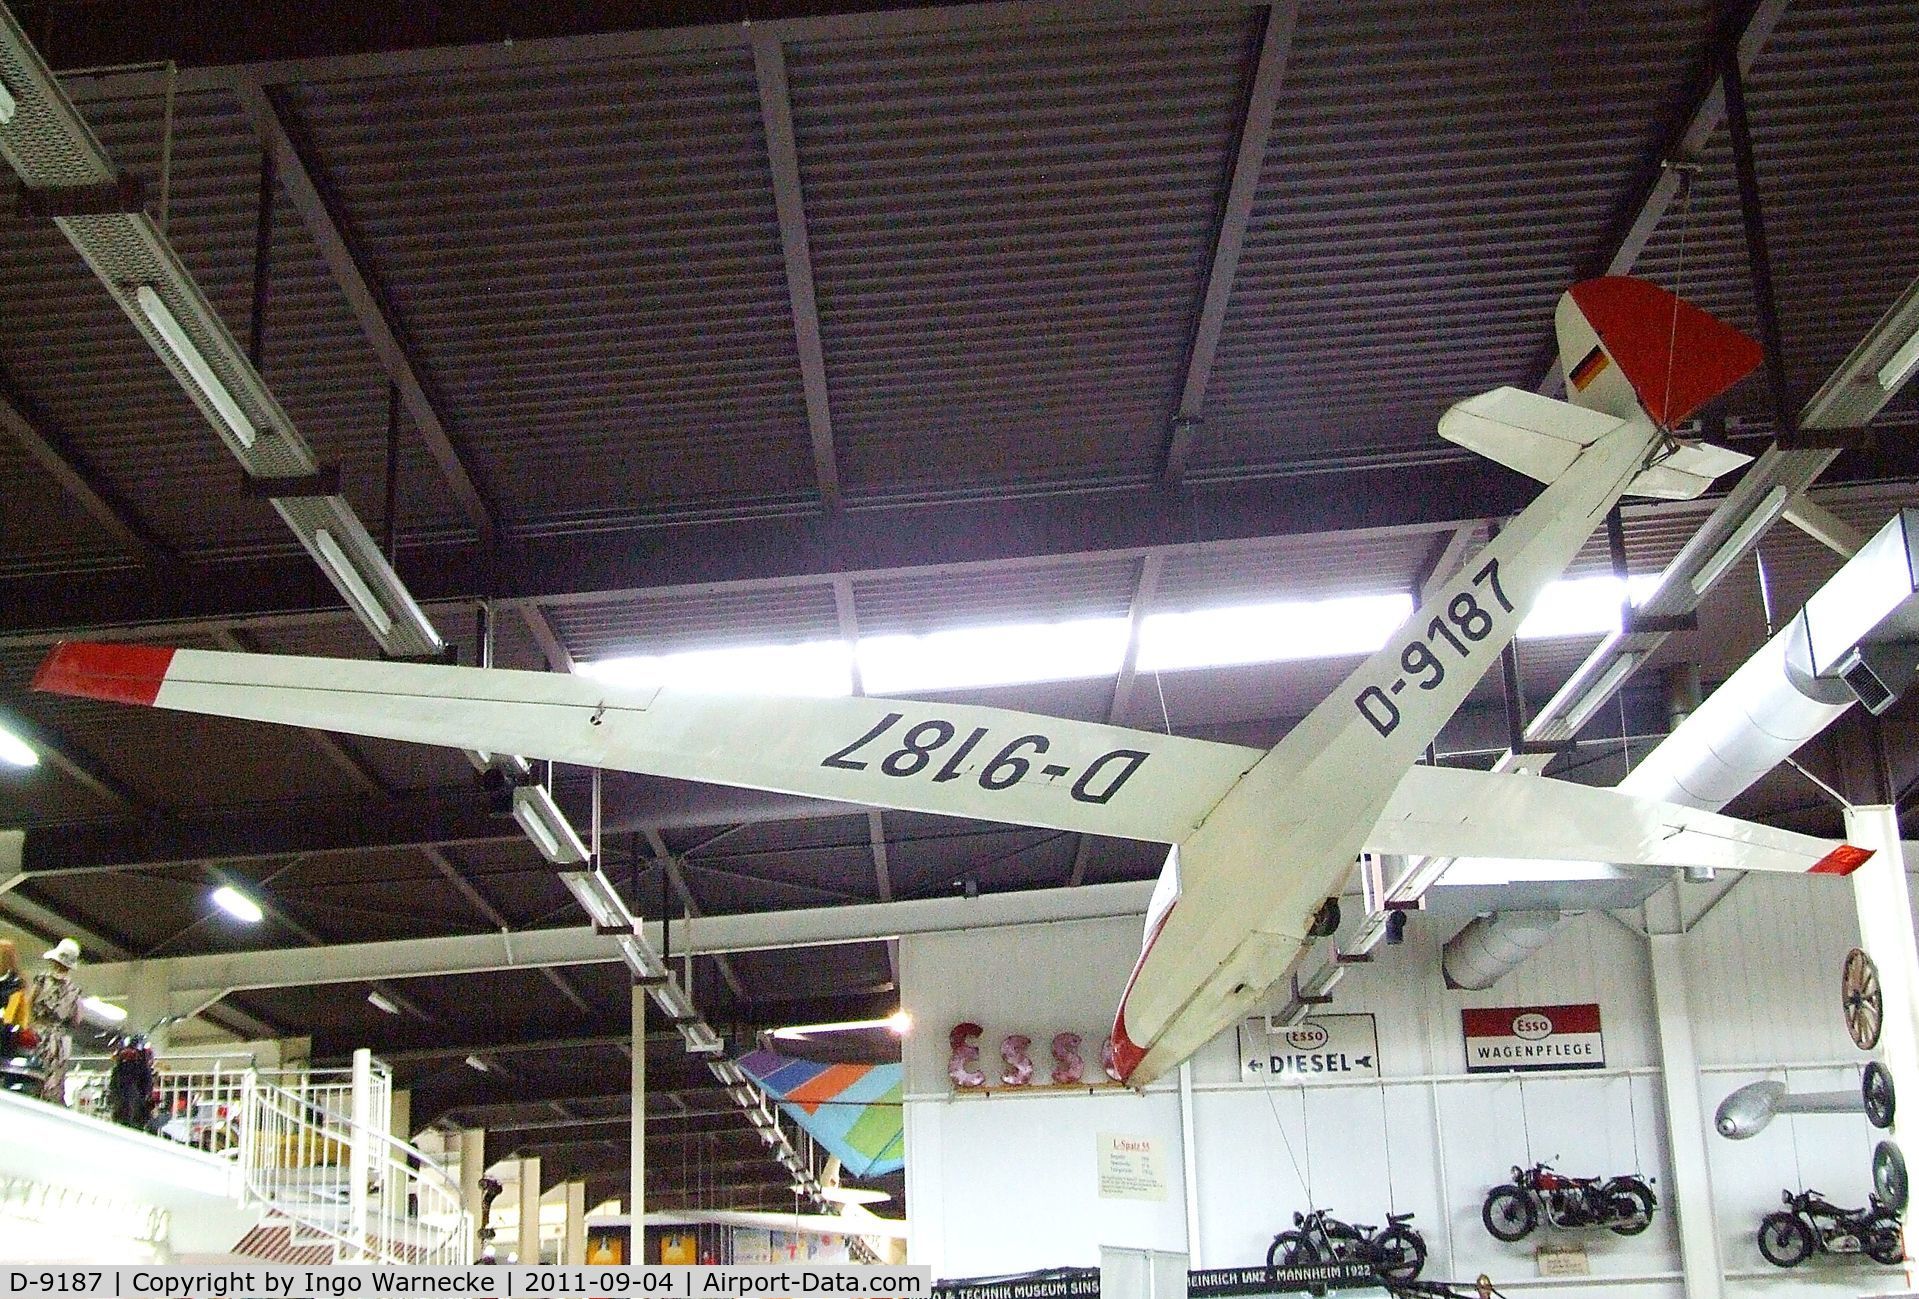 D-9187, Scheibe L-Spatz 55 C/N 565, Scheibe L-Spatz 55 at the Auto & Technik Museum, Sinsheim